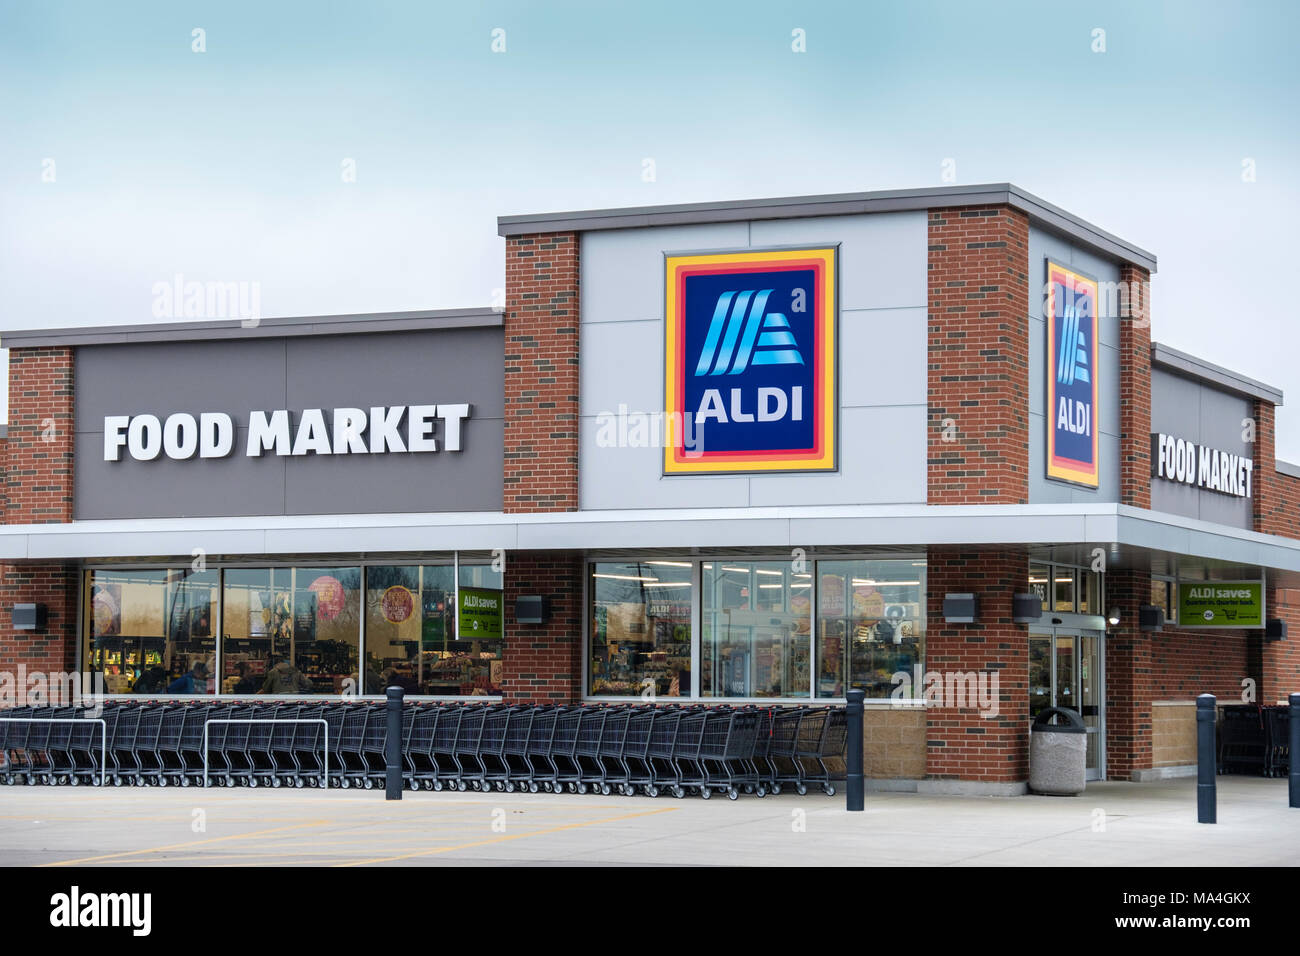 Extérieur d'un magasin d'alimentation ou au supermarché Aldi, la vente à des prix réduits à Wichita, Kansas, États-Unis. Banque D'Images